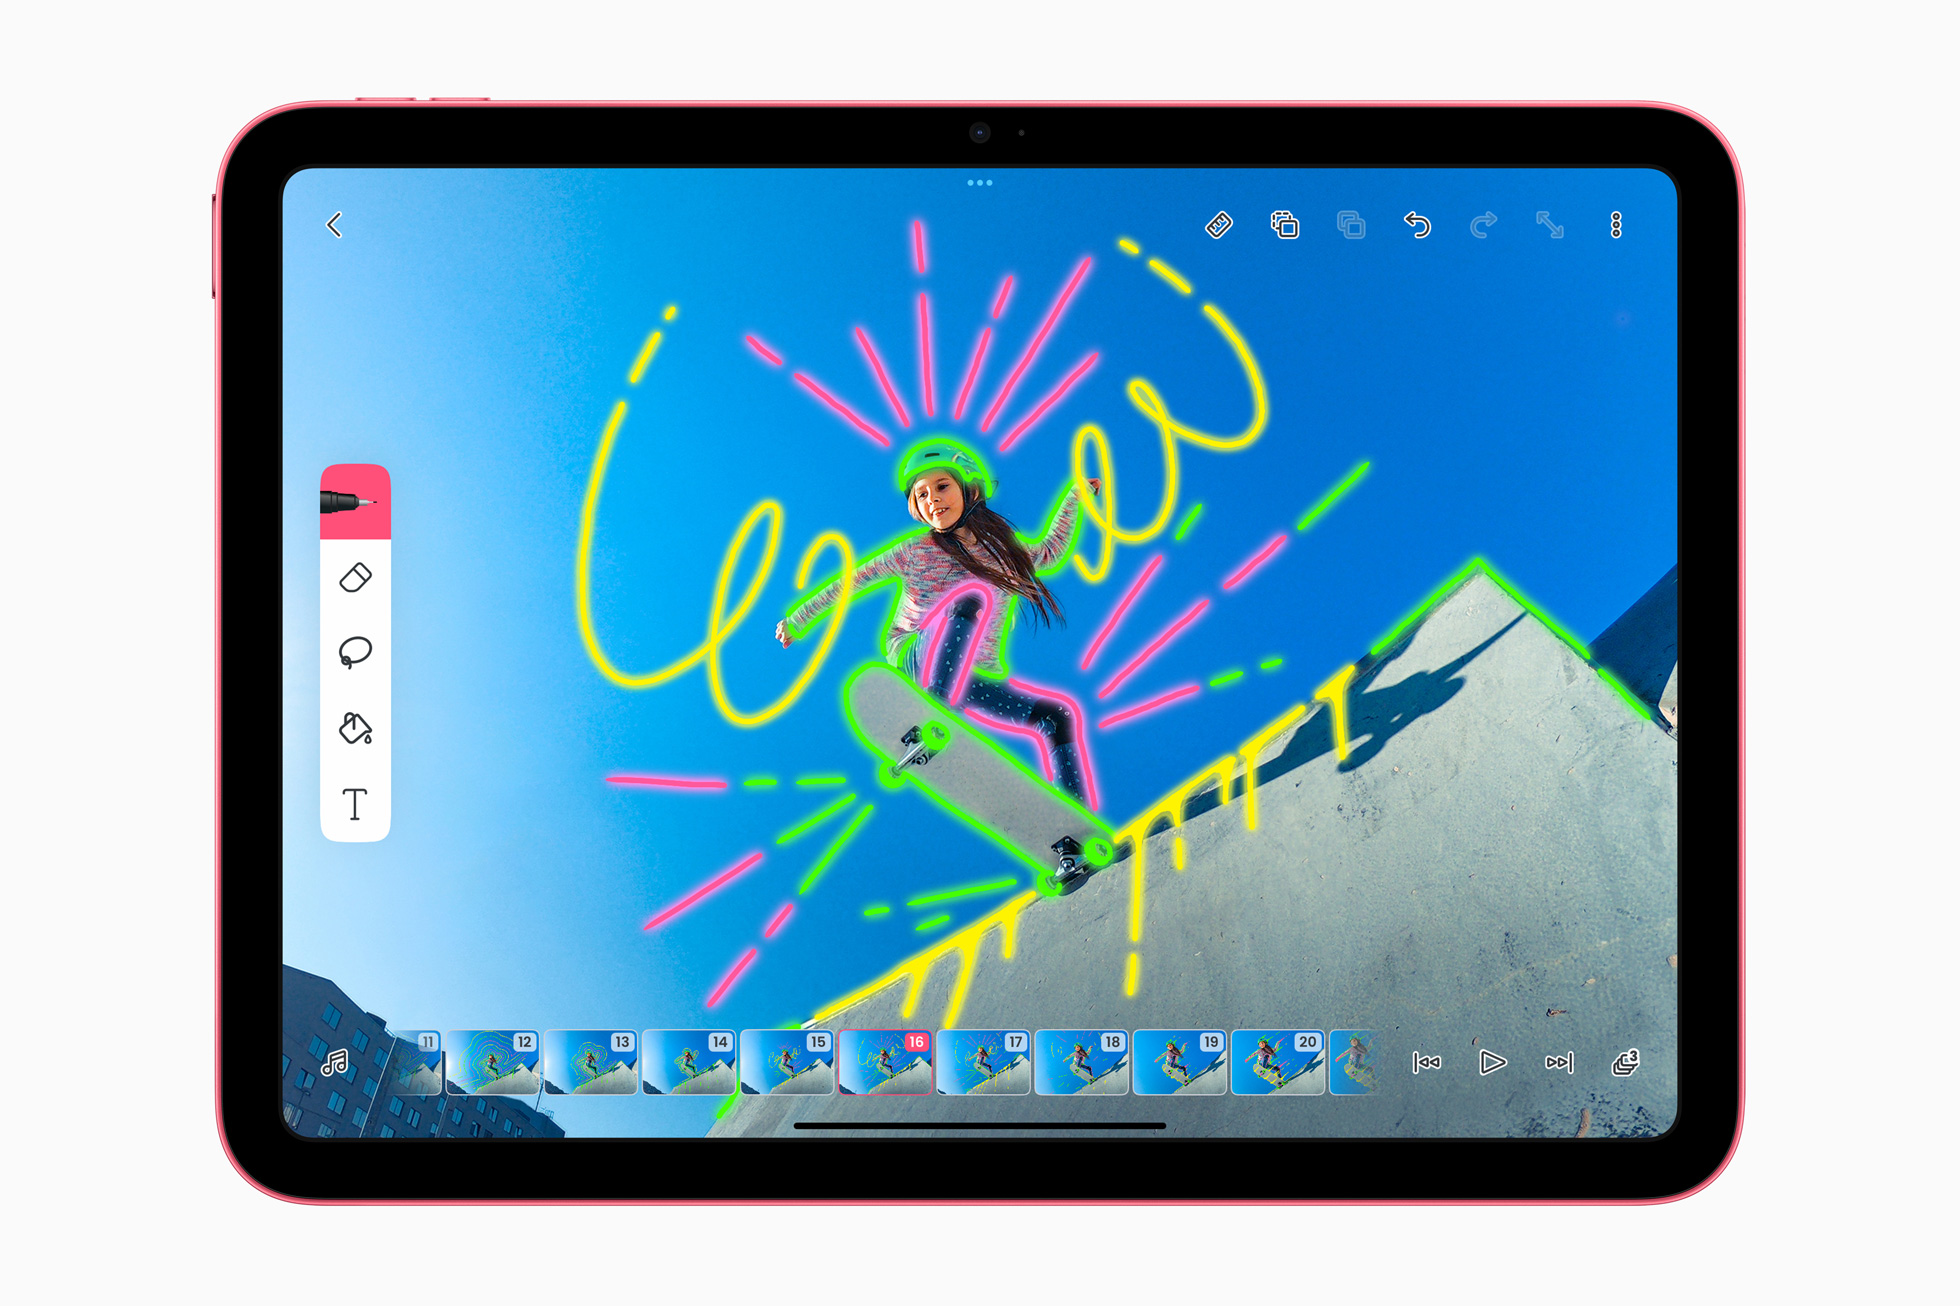 Apple เปิดตัว iPad ที่ออกแบบใหม่หมดใน 4 สีสันสดใส